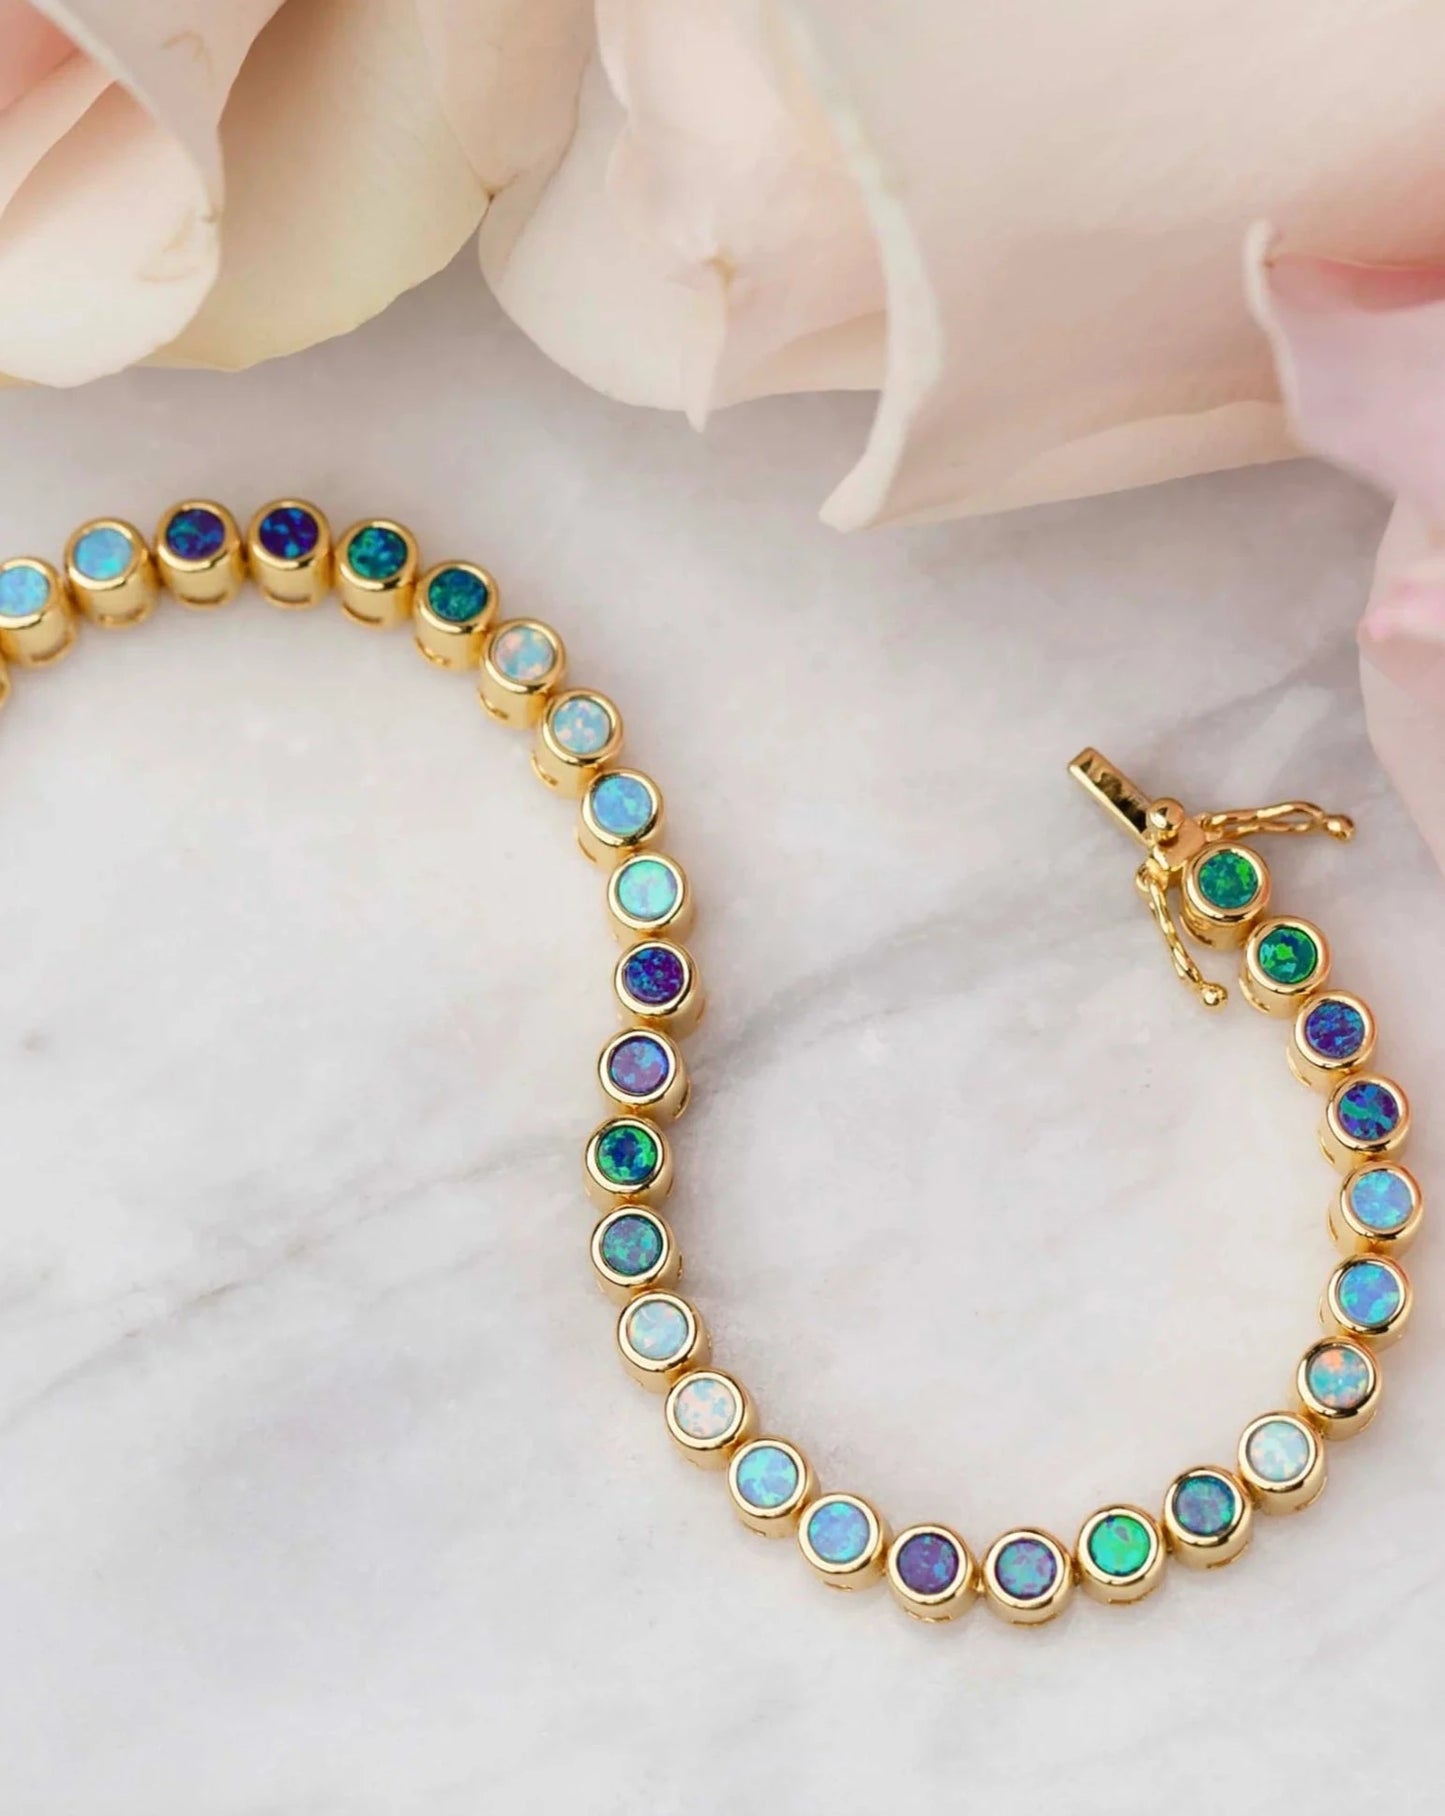 Opal Ombre Tennis Bracelet from La Kaiser Jewelry